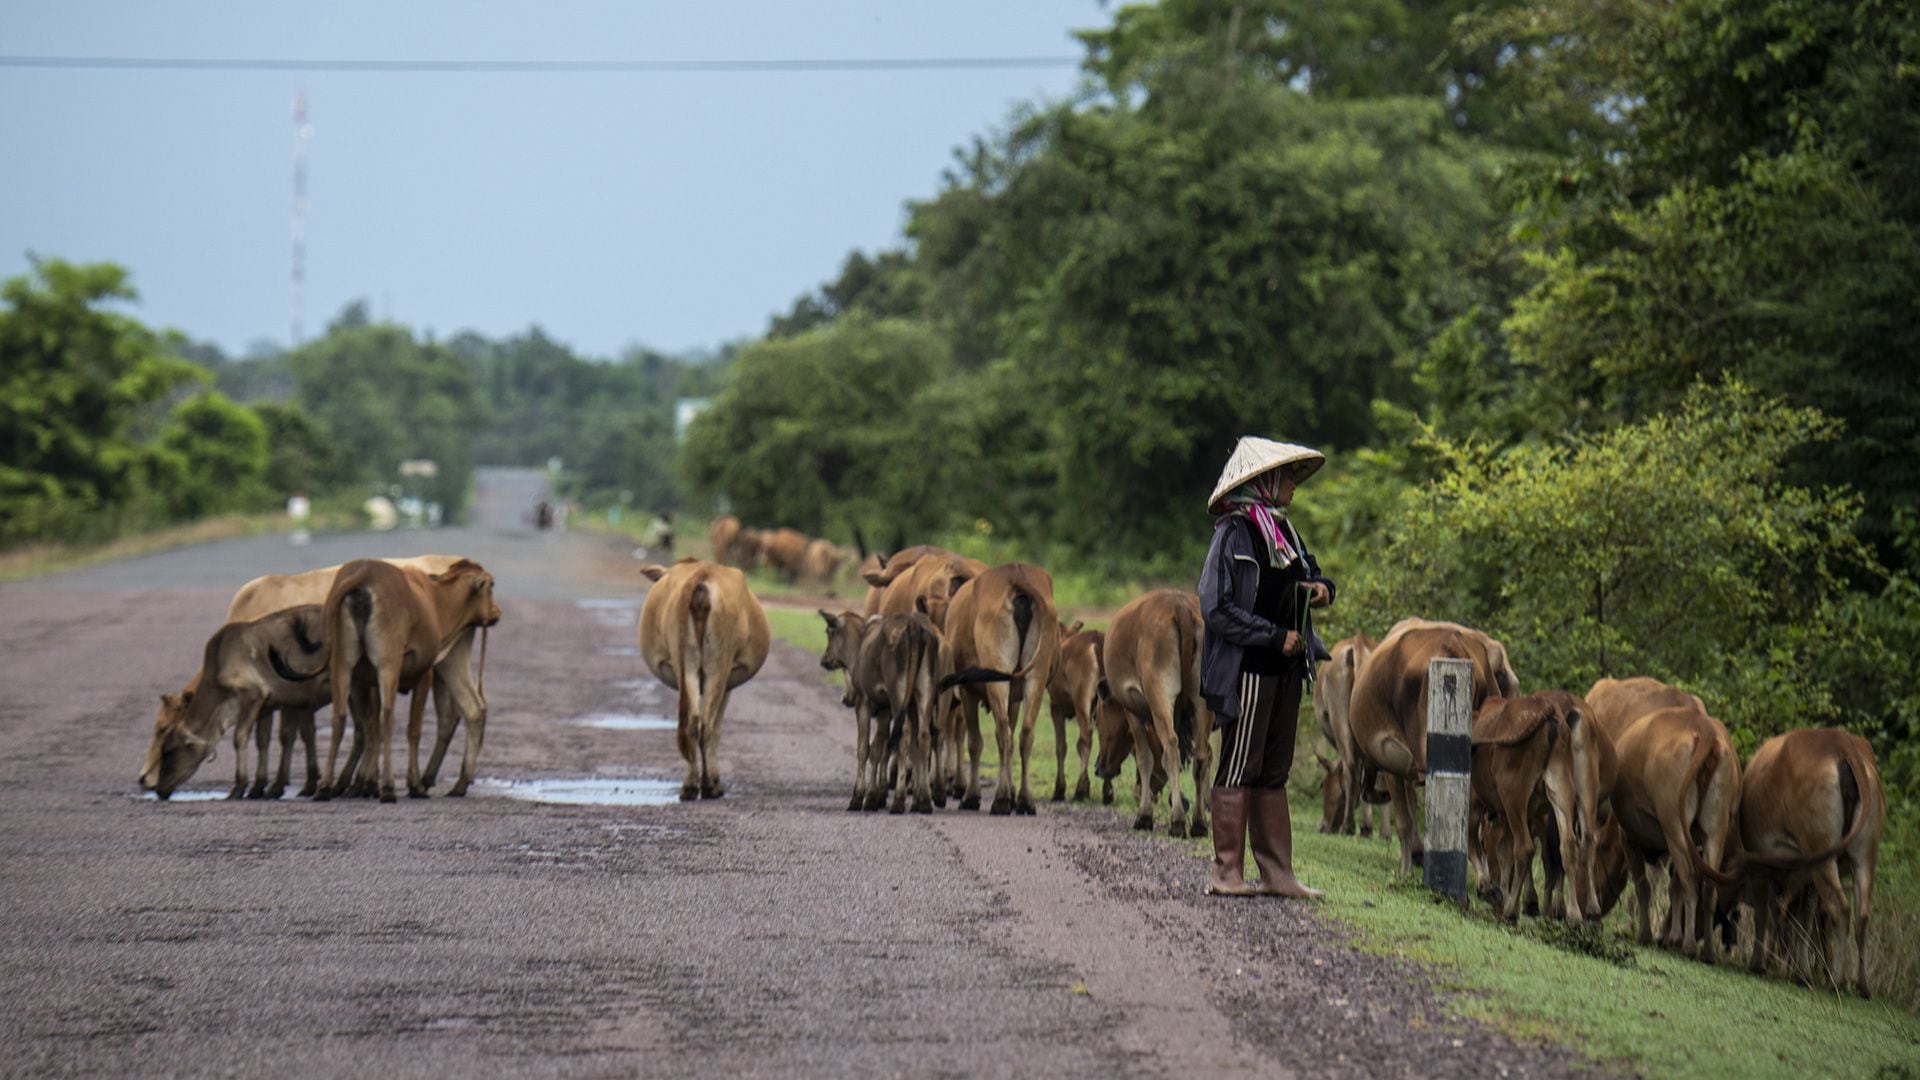 Una persona es vista con un rebaño de vacas a lo largo de la autopista AH 11 que va de Vientiane, Laos, a Sihanoukville, Camboya, el 21 de agosto de 2022 en Si Phan Don, Laos (Getty Images)